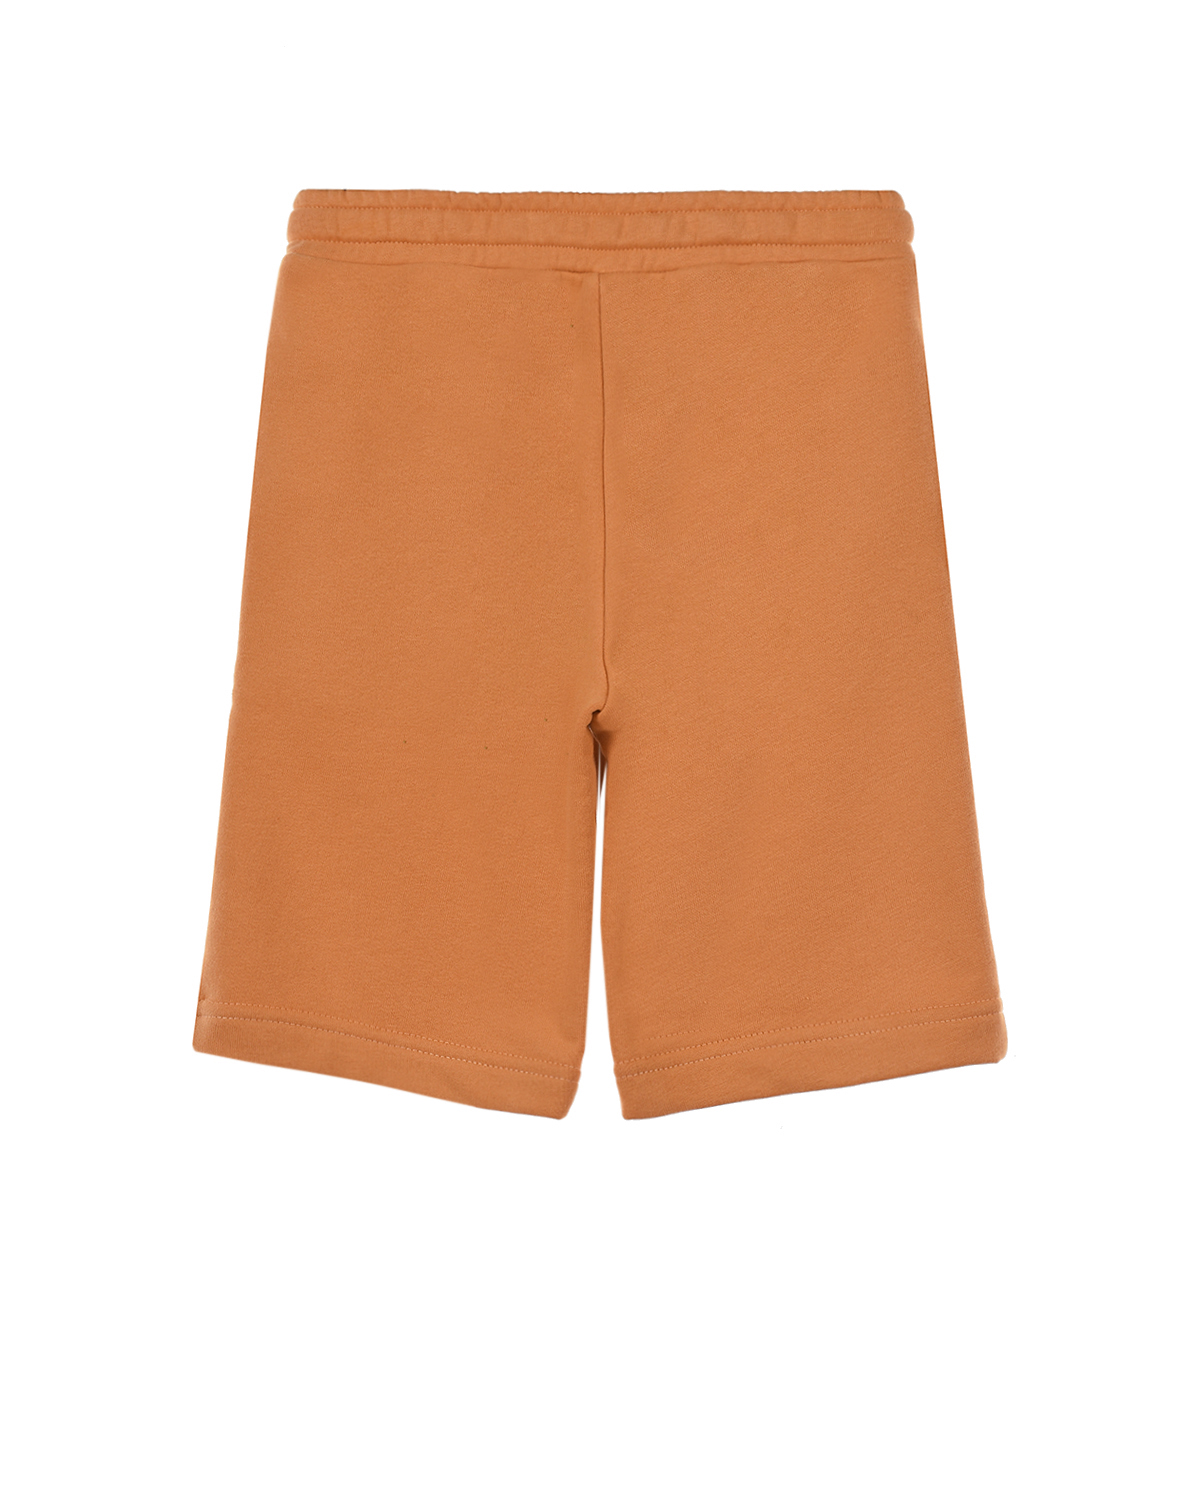 Оранжевые шорты из футера Dan Maralex детские, размер 128, цвет оранжевый - фото 2